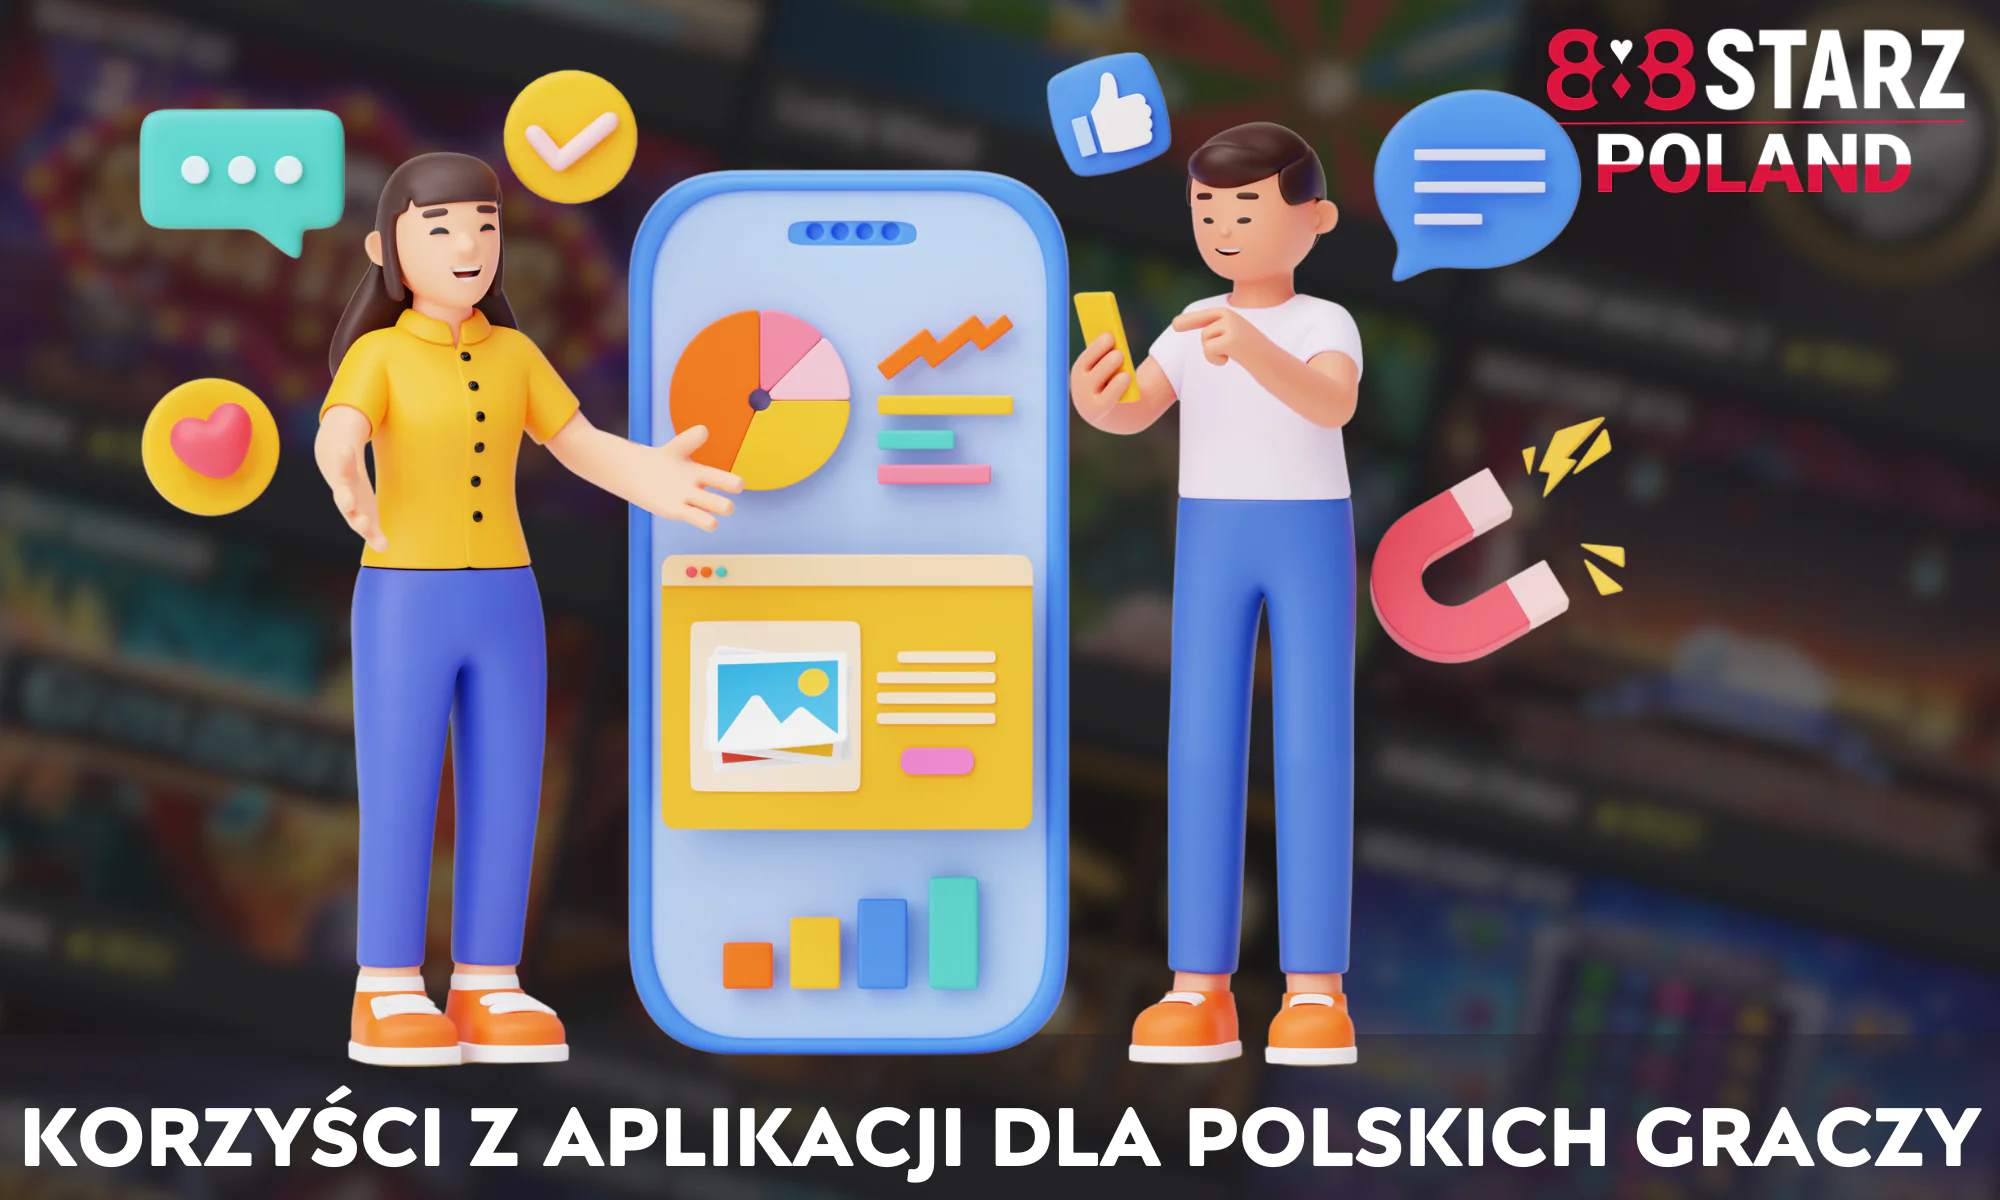 Aplikacja 888Starz ma wiele zalet dla polskich graczy